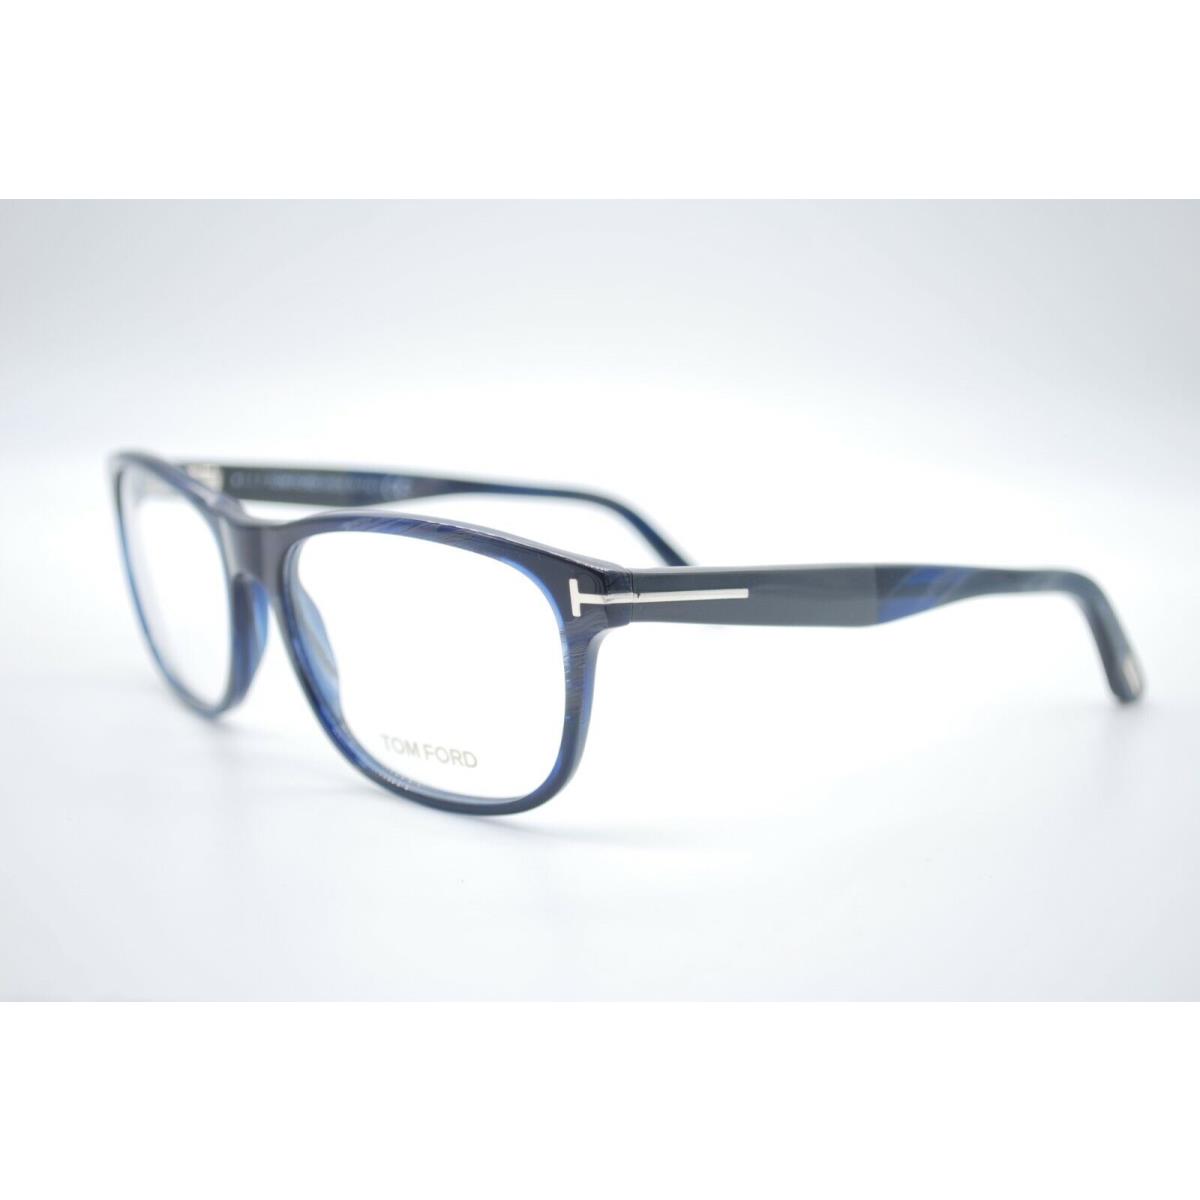 Tom Ford eyeglasses  - BLUE HORN Frame 0